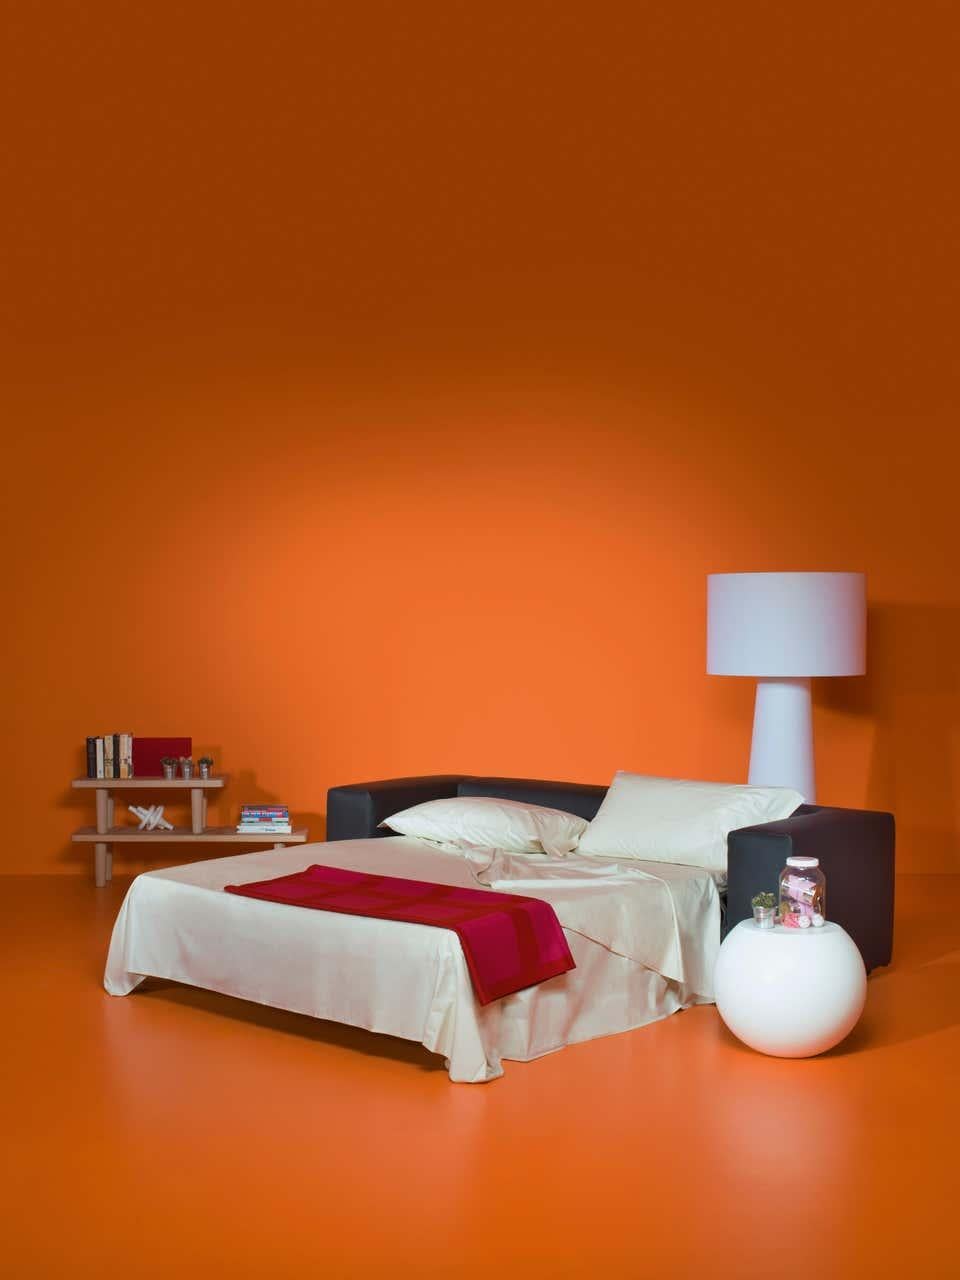 Das von Rodolfo Dordoni entworfene Schlafsofa Cuba 25 ist ein Zweisitzer, der ein ausziehbares Bett enthält. Der abnehmbare Bezug ist in einer Auswahl von Stoffen und Ledern der Kollektion erhältlich. Die Polsterung des Schlafsofas Cuba 25 besteht